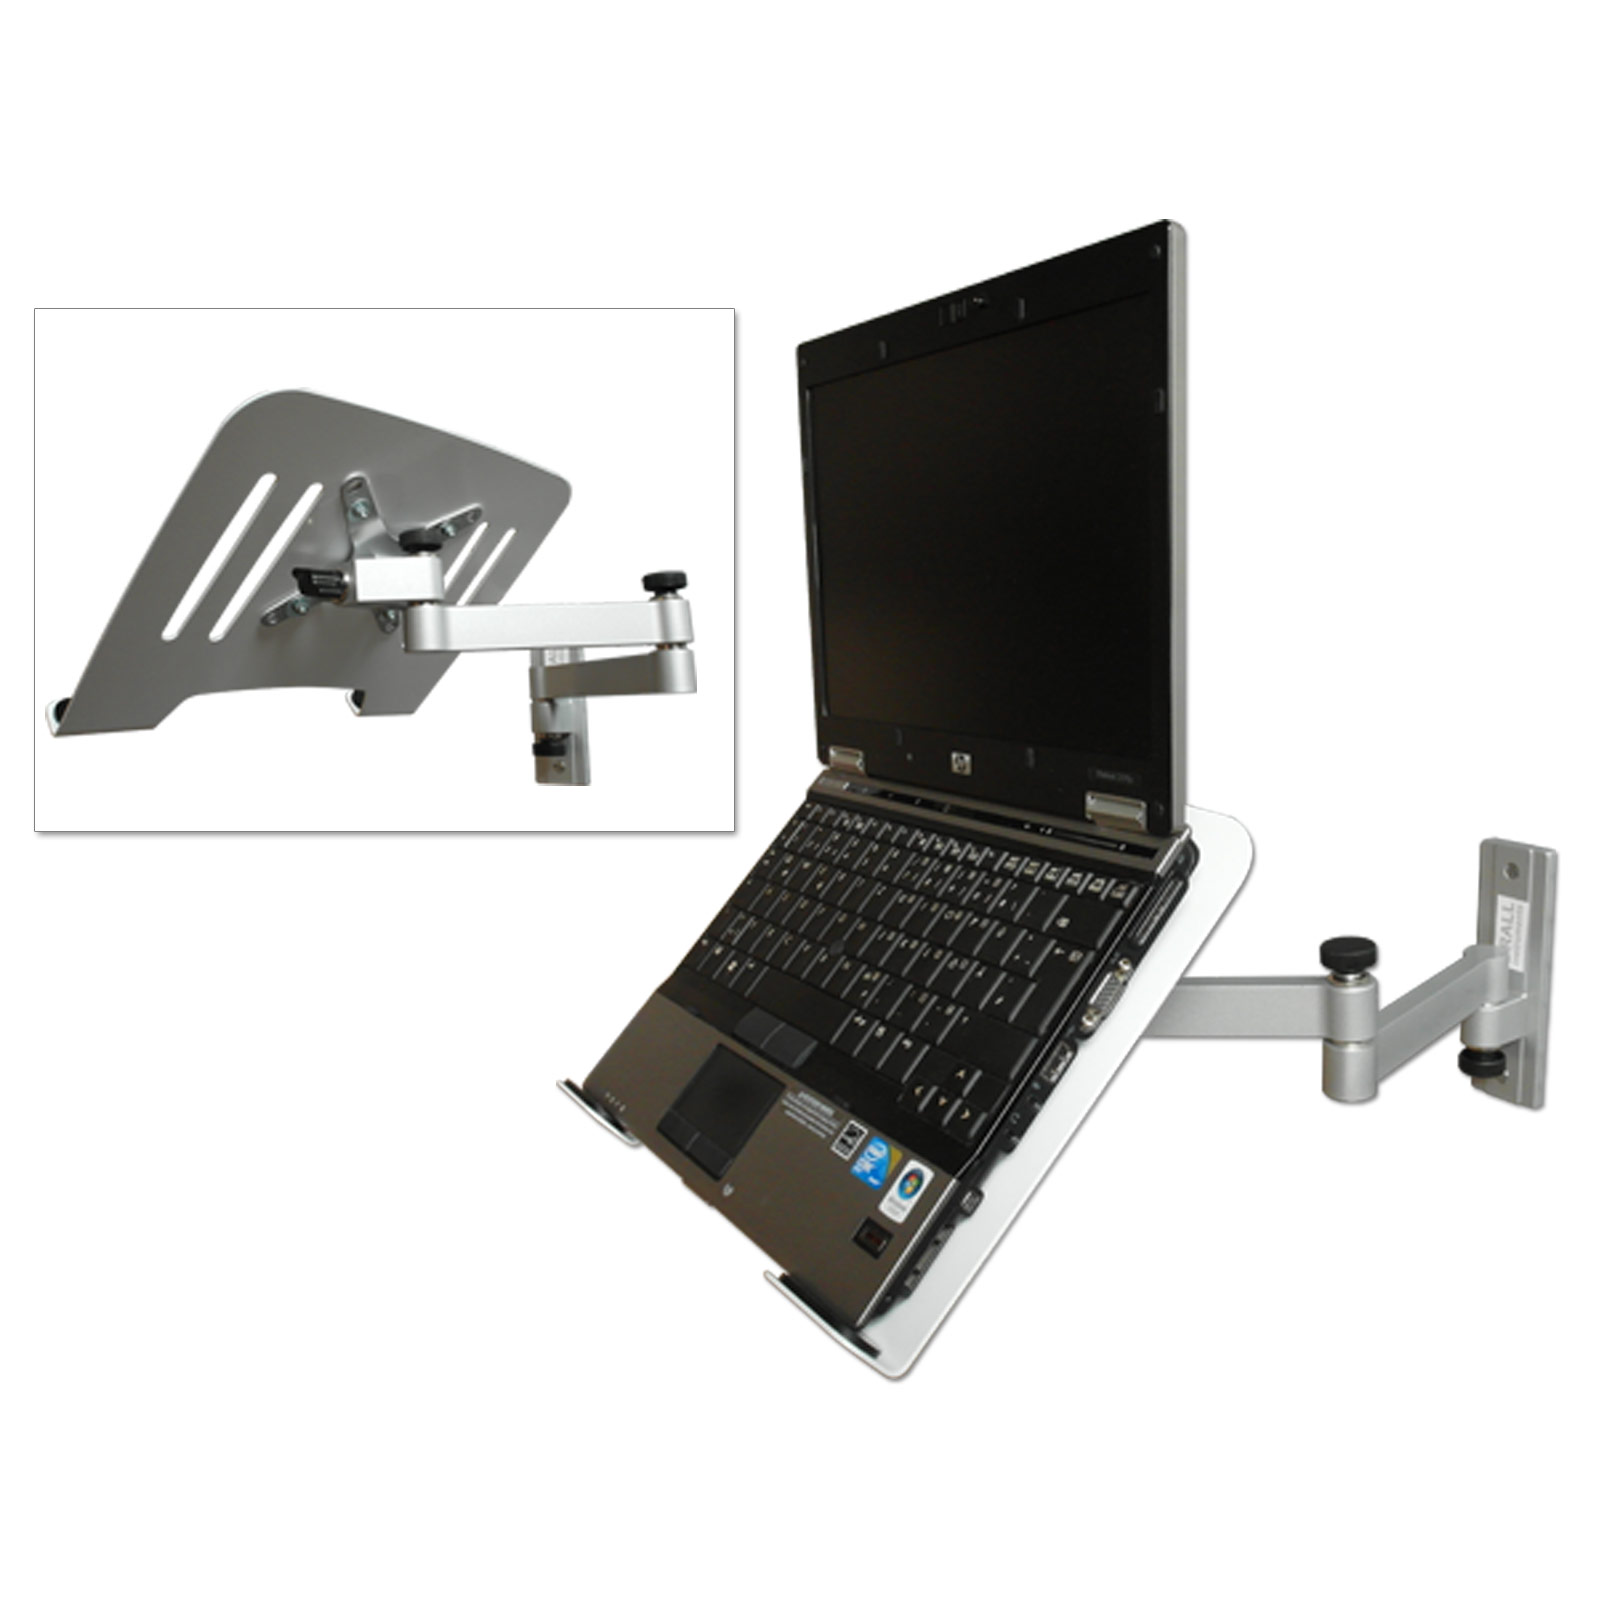 Wandhalterung - mit Ablage Halterung Laptop silber - DRALL Netbook INSTRUMENTS Wandhalterung weiß Universal Adapter Notebook